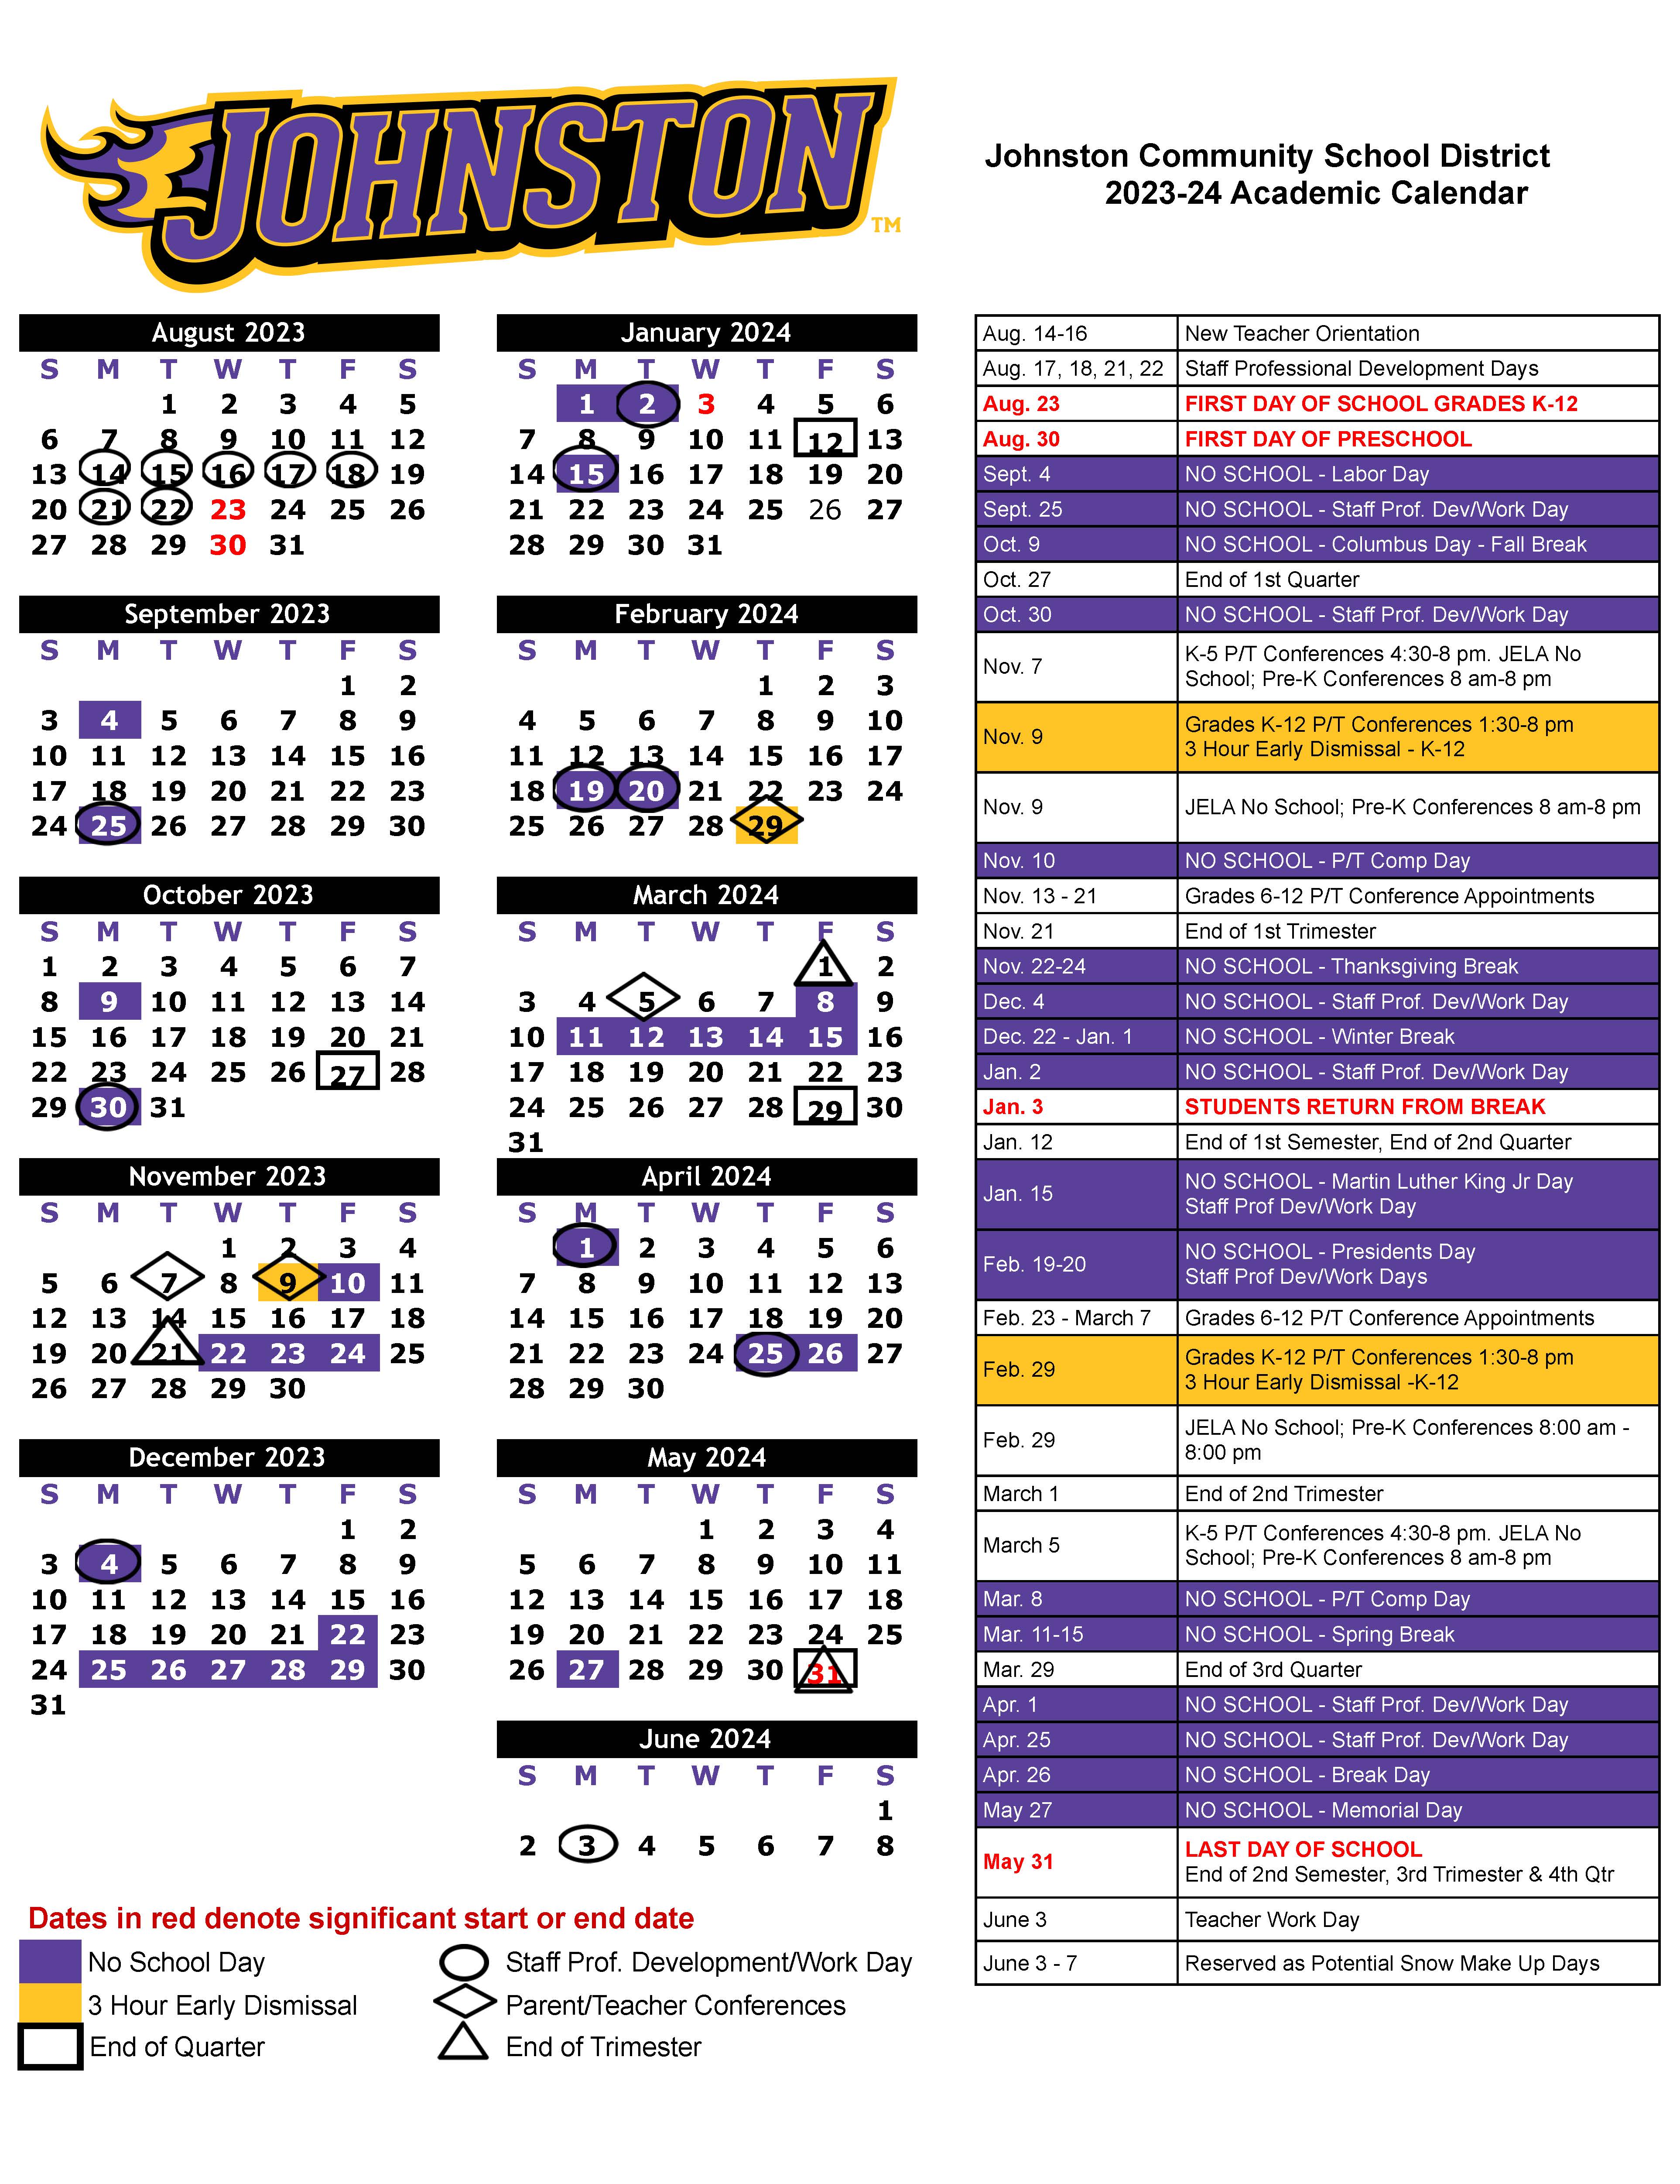 utica-university-spring-2023-calendar-2023-calendar